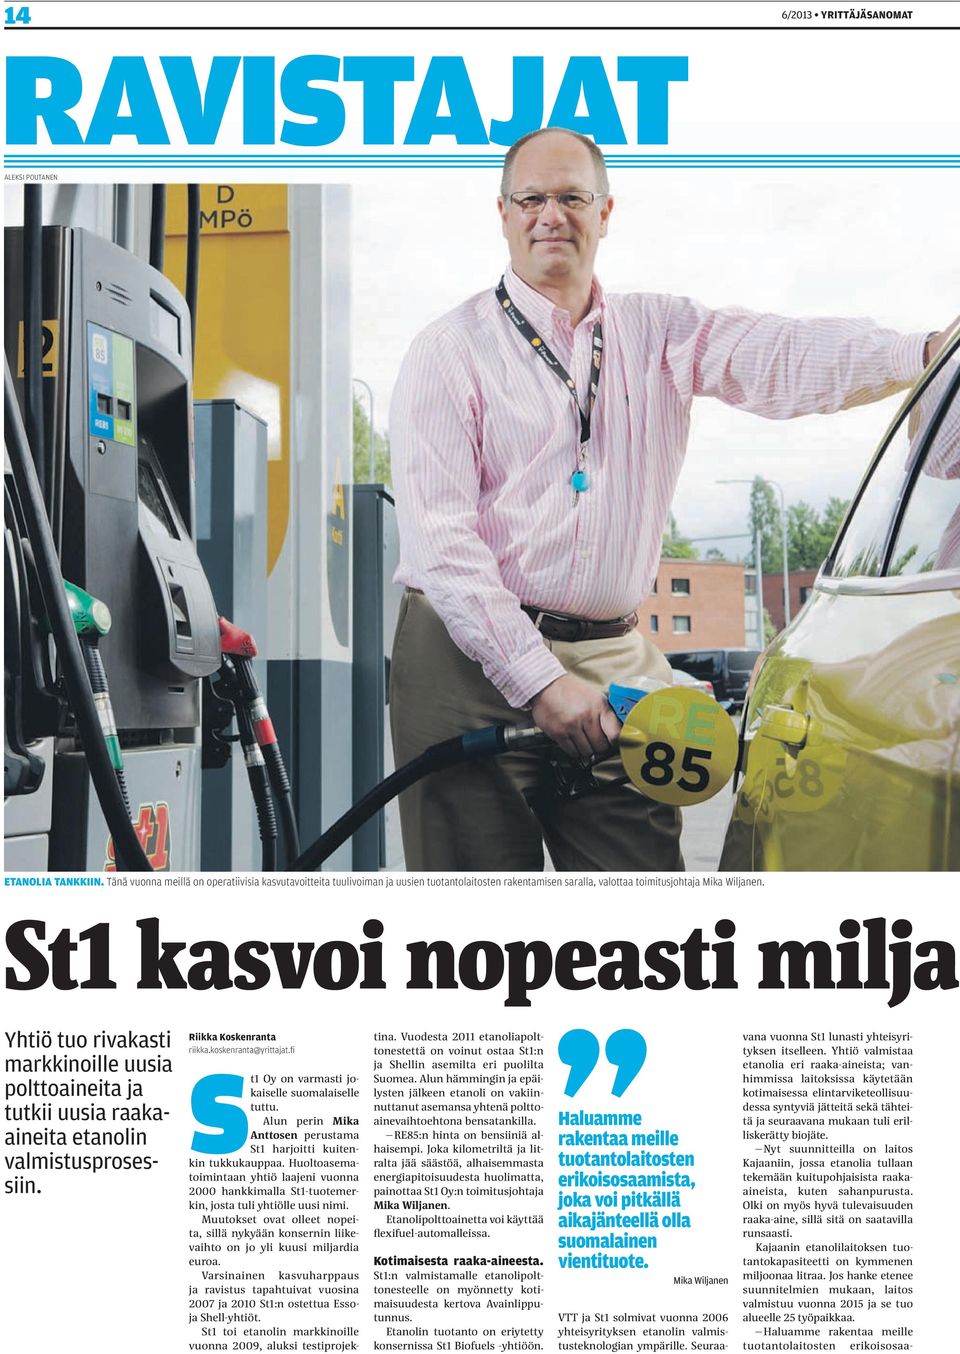 St1 kasvoi nopeasti miljar Yhtiö tuo rivakasti markkinoille uusia polttoaineita ja tutkii uusia raakaaineita etanolin valmistusprosessiin. Riikka Koskenranta riikka.koskenranta@yrittajat.